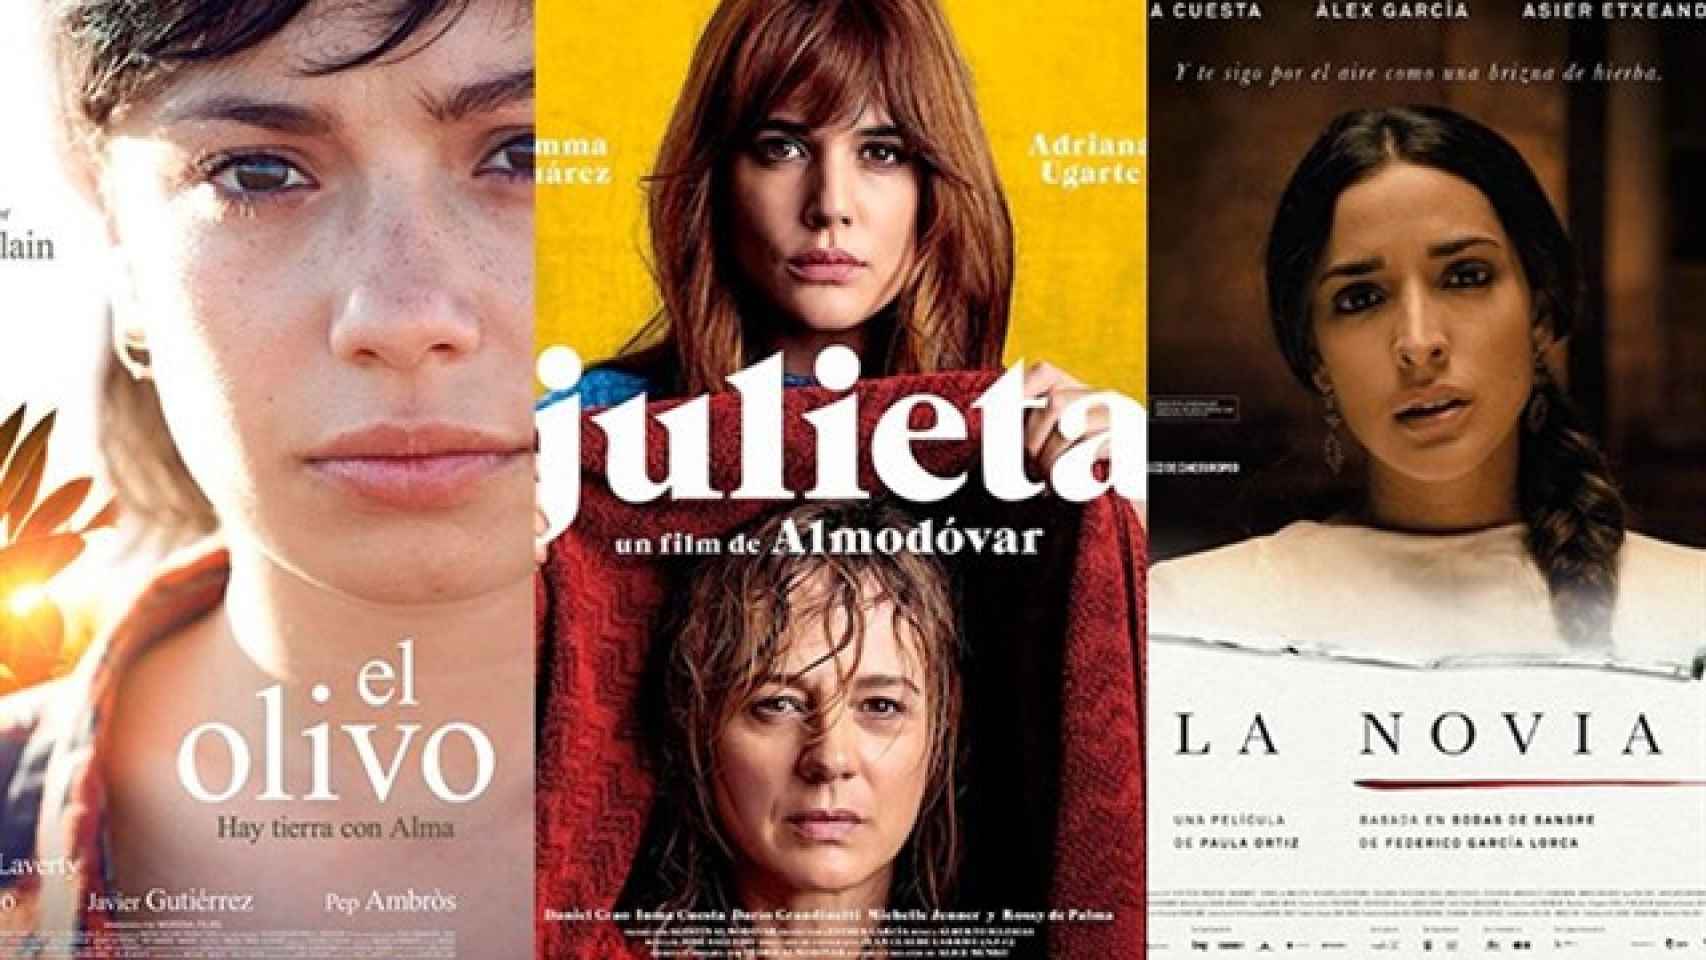 Los carteles de 'El olivo', 'Julieta' y 'La novia', las tres películas preseleccionadas para representar a España en los Oscar. / EUROPAPRESS